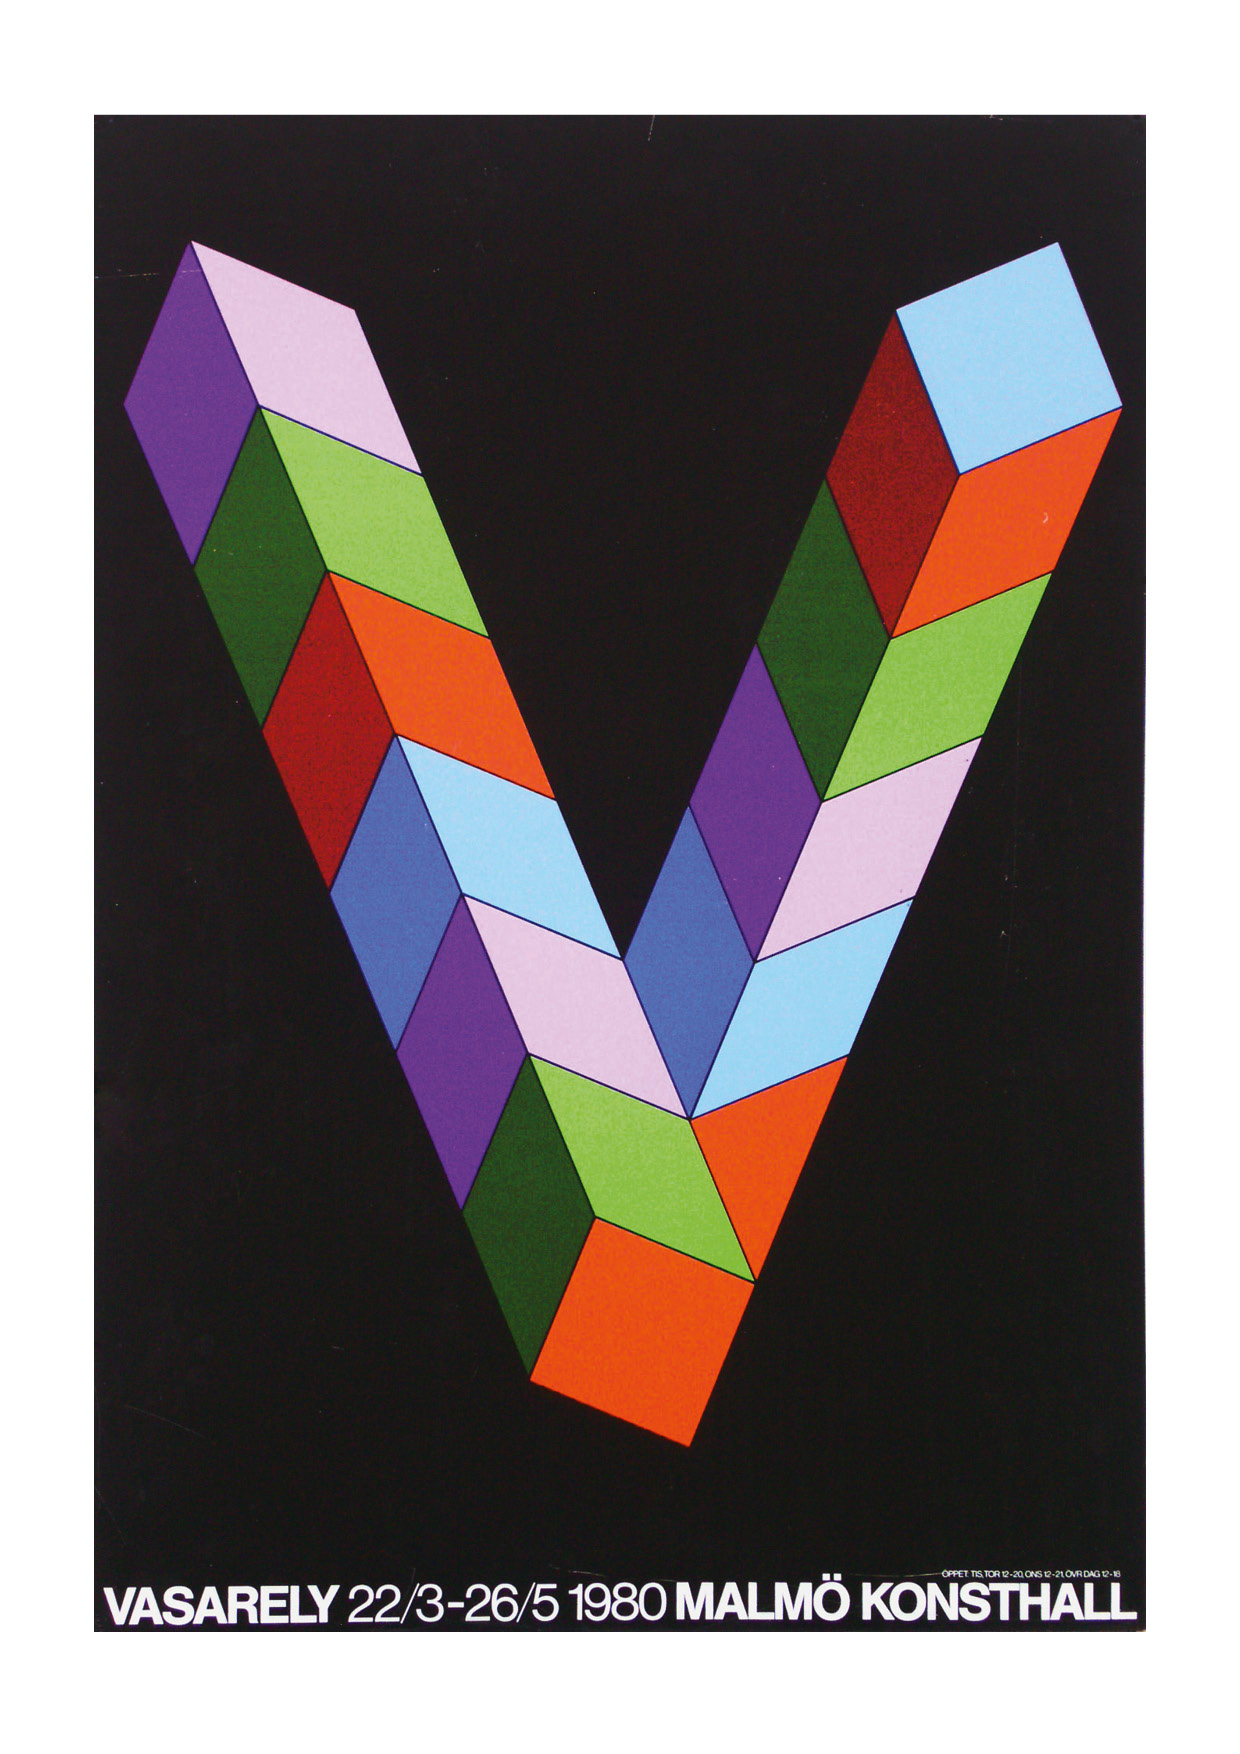 Poster "Vasarely" 1980. Grafisk 3D bild, ett V, i lila, grönt, rött och blått på svart bakgrund.